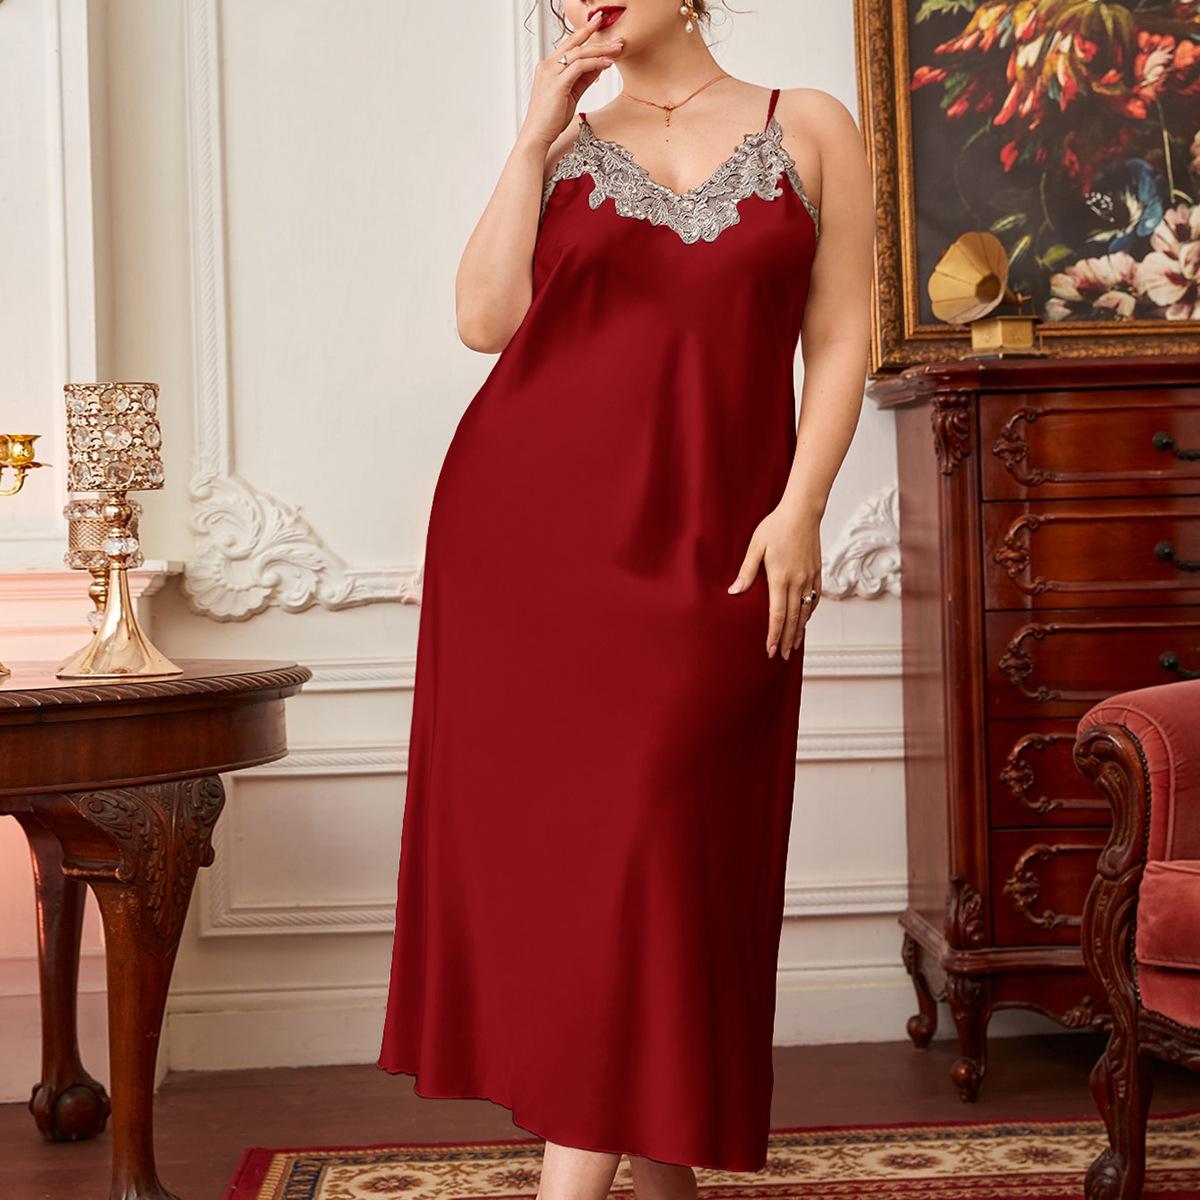 Nuisette grande taille de couleur rouge avec de la dentelle, portée par une femme debout dans une pièce luxueuse